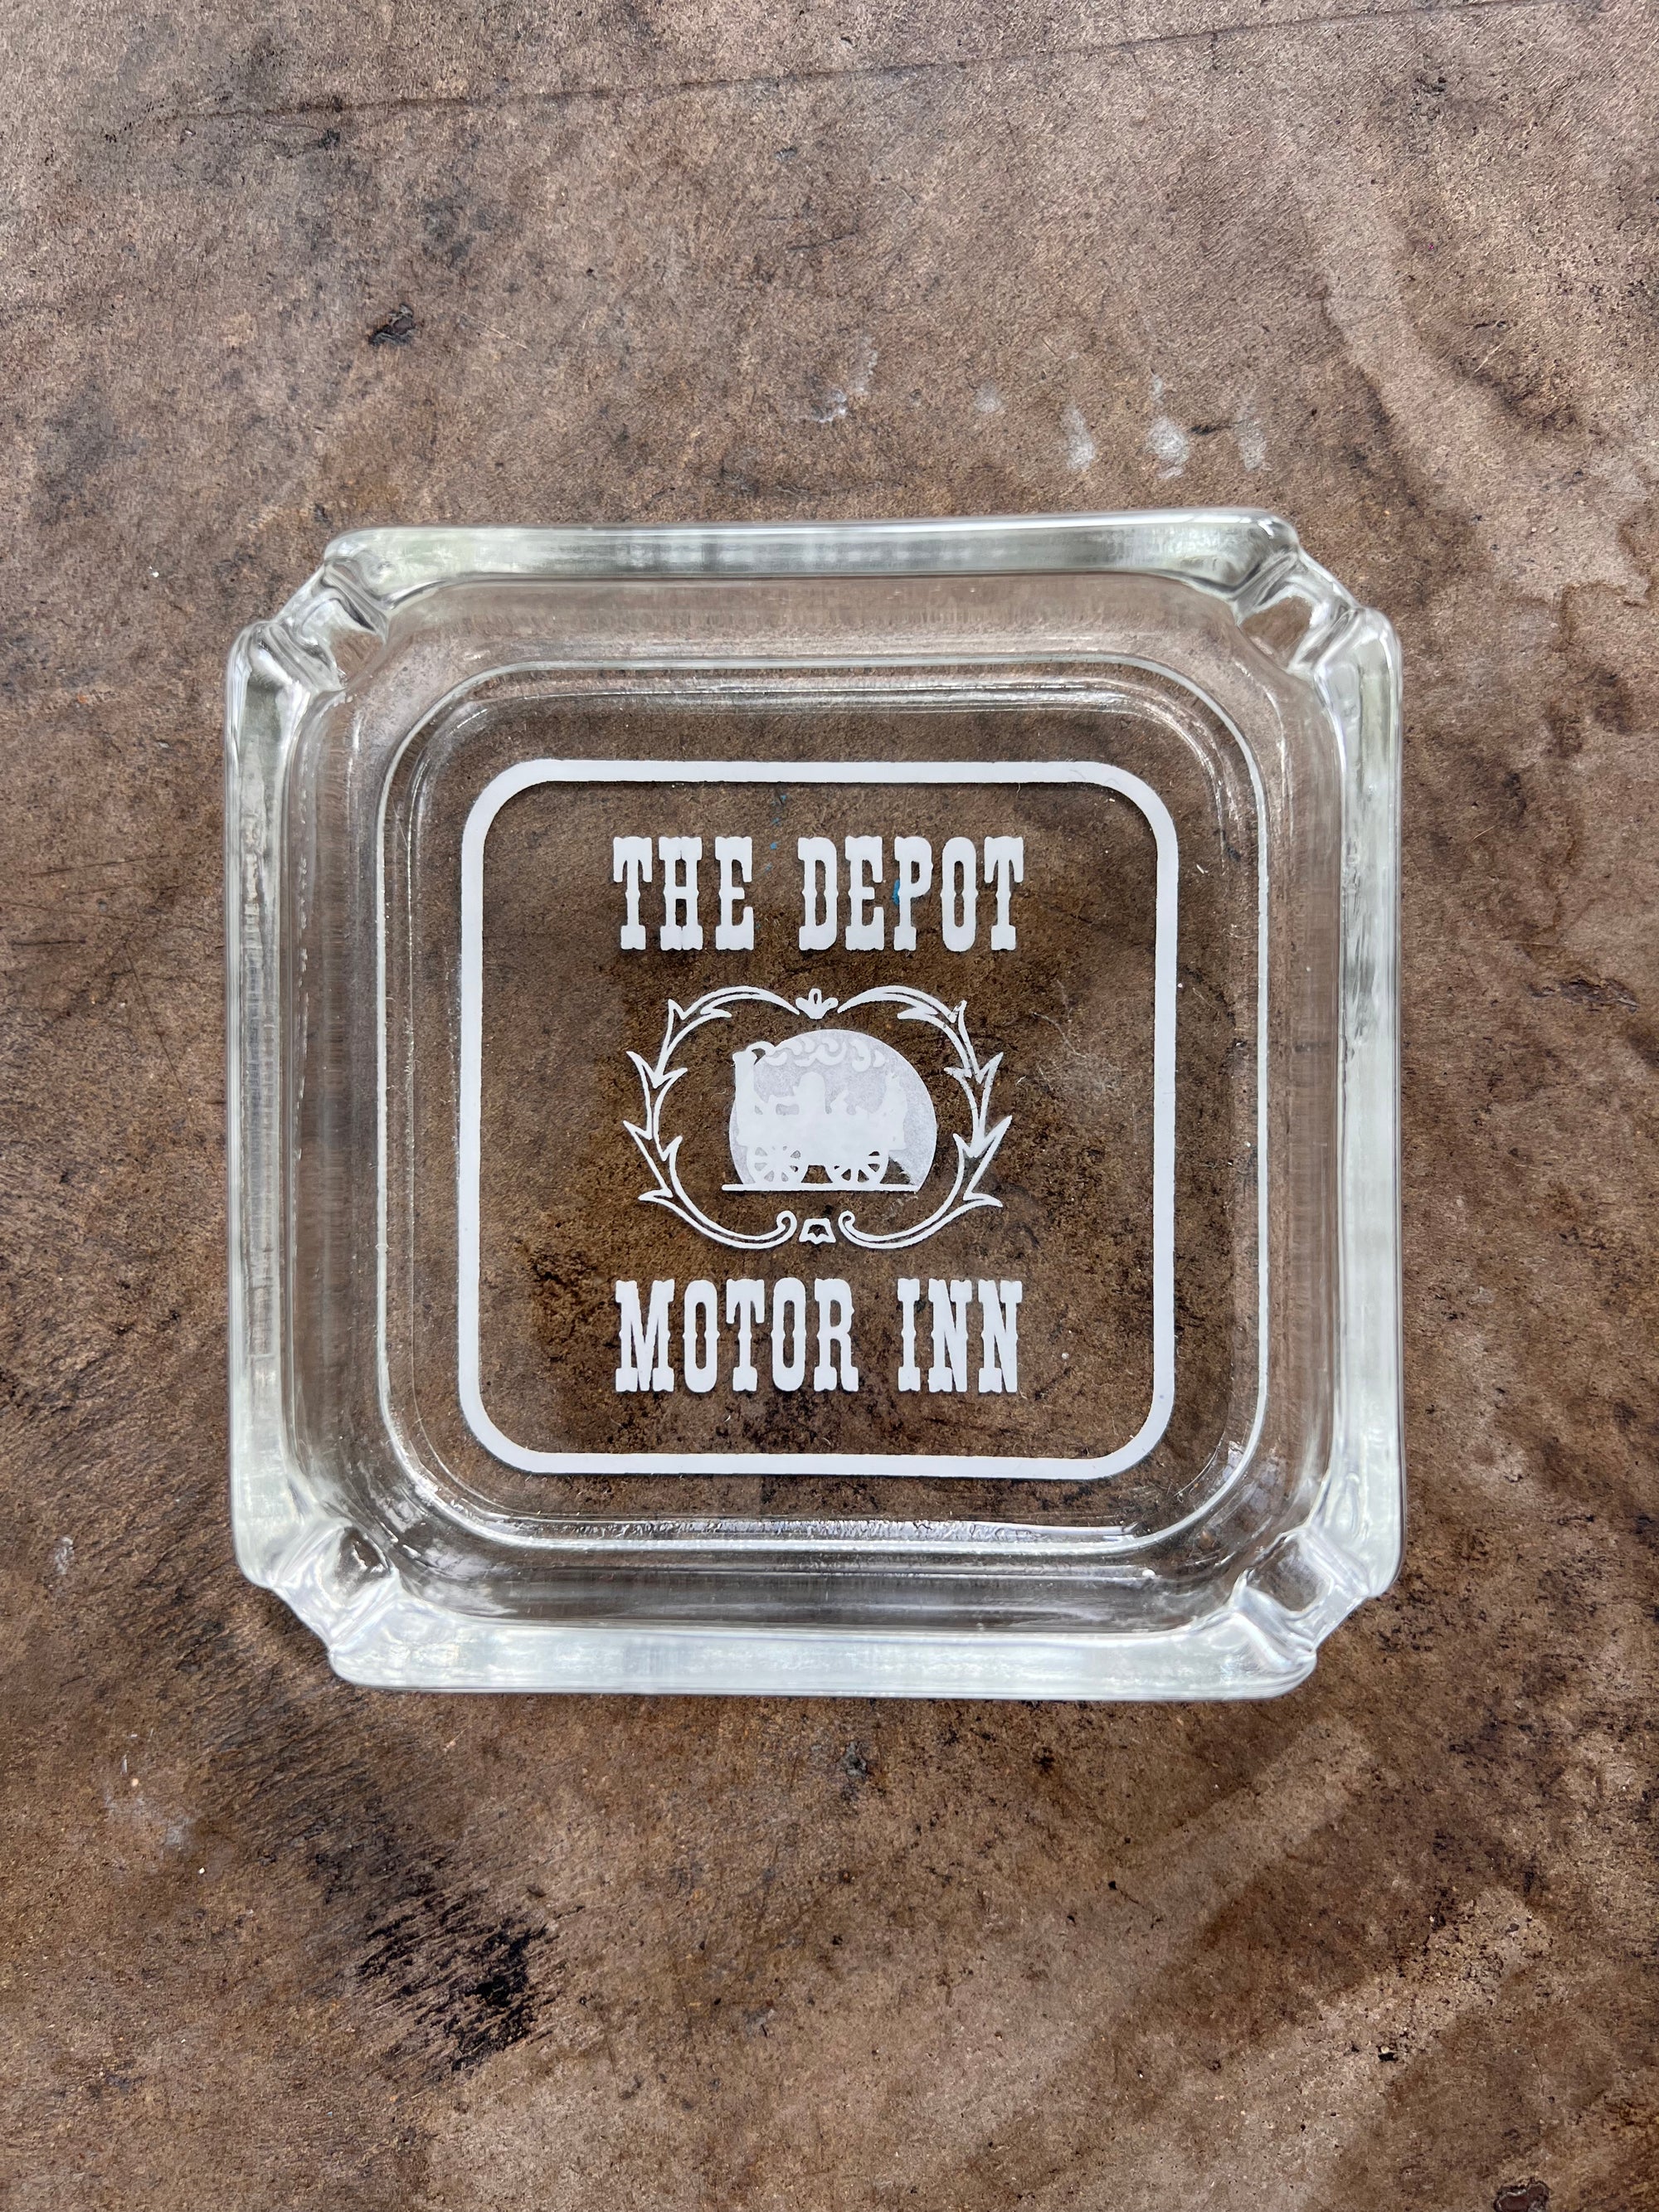 The Depot Motor Inn Glass Ashtray